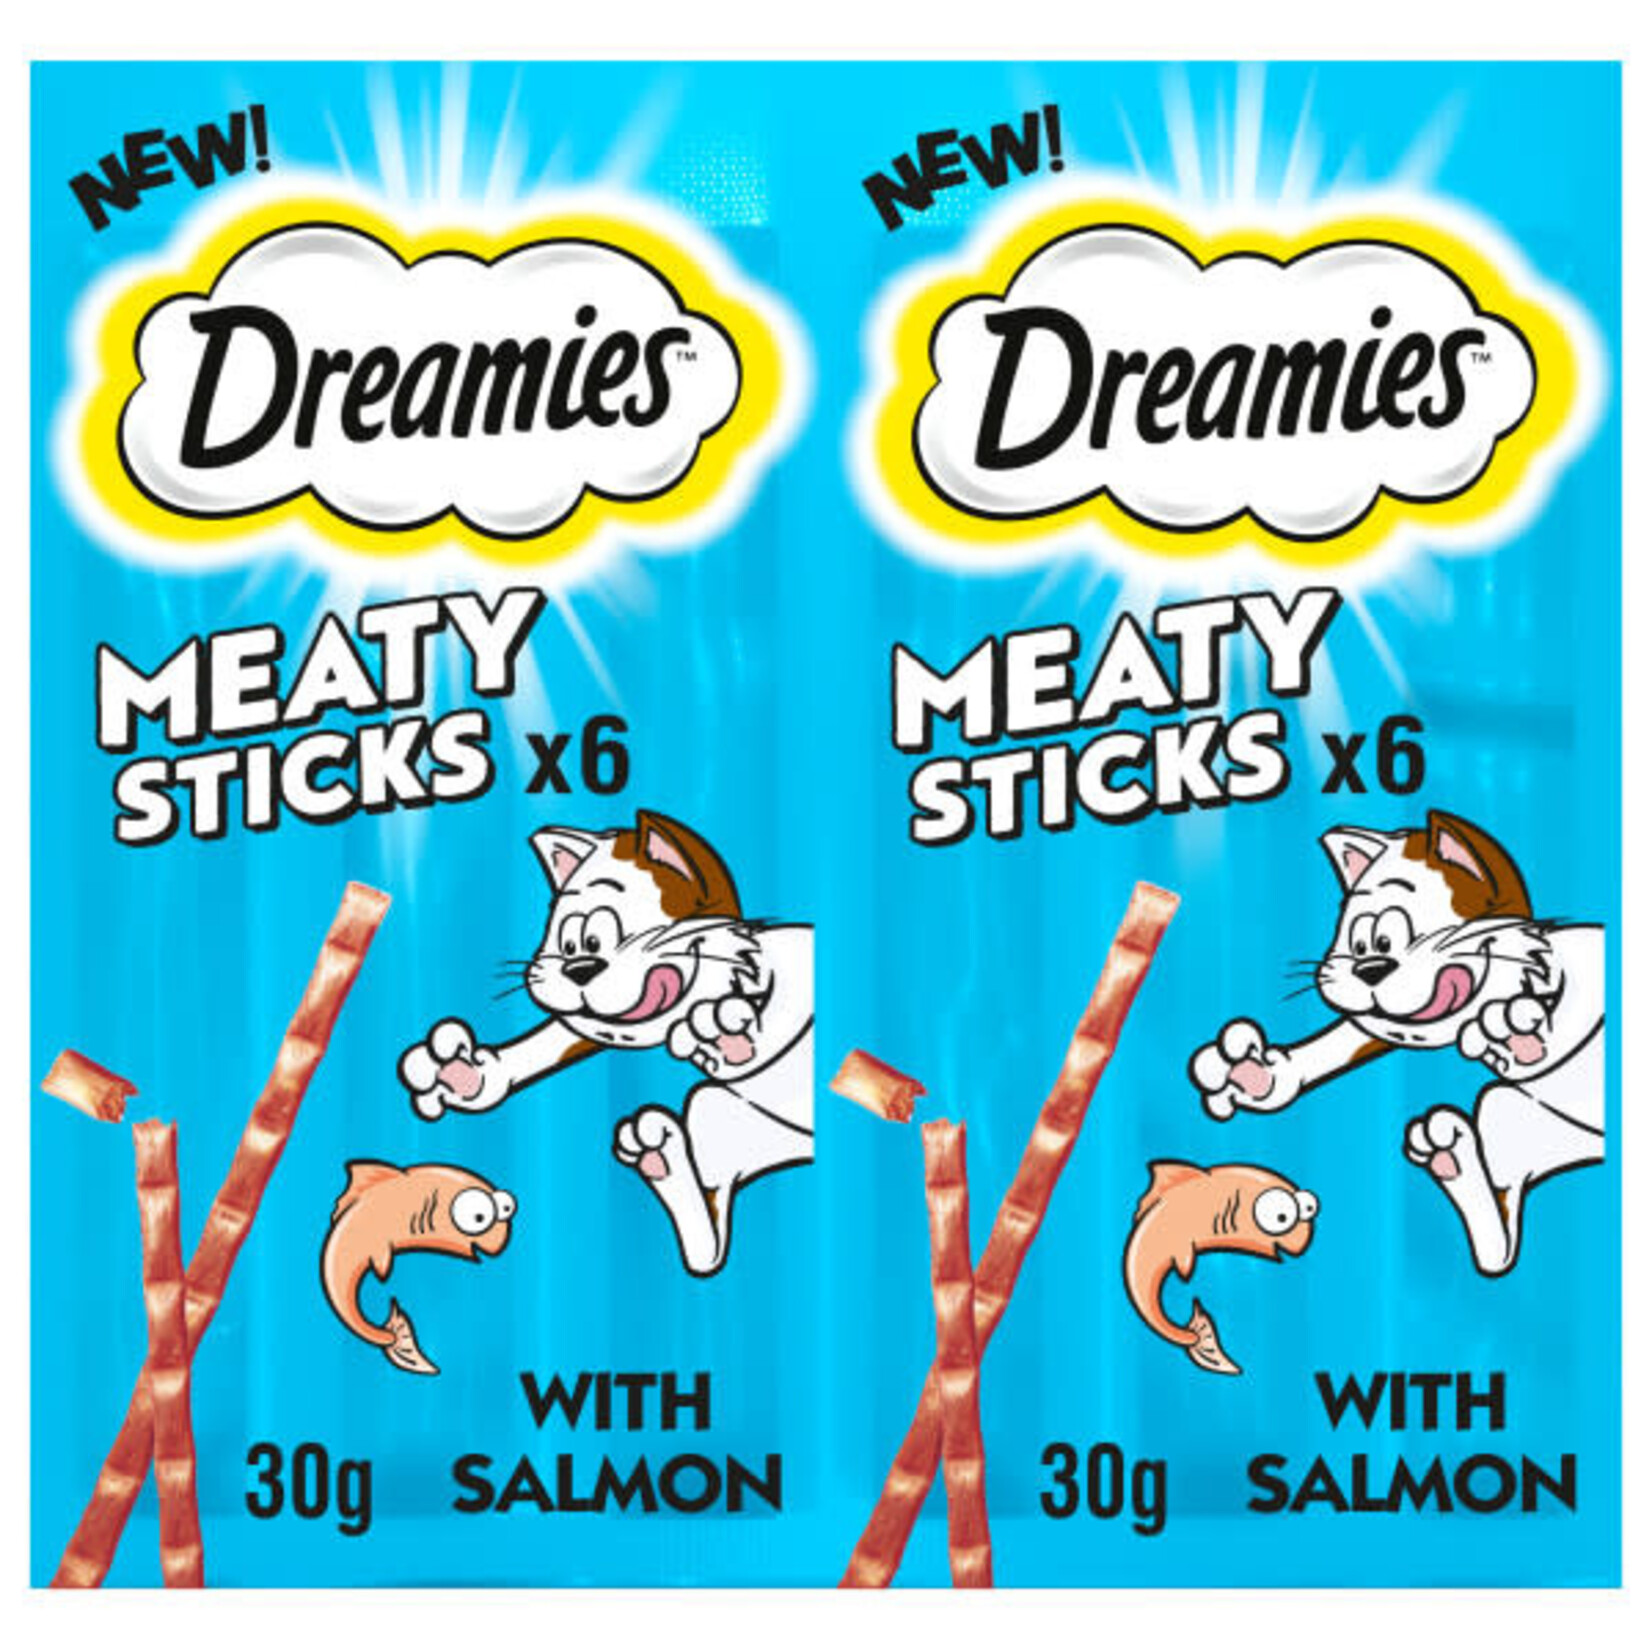 Dreamies Meaty Sticks with Salmon, 6 Sticks 30g